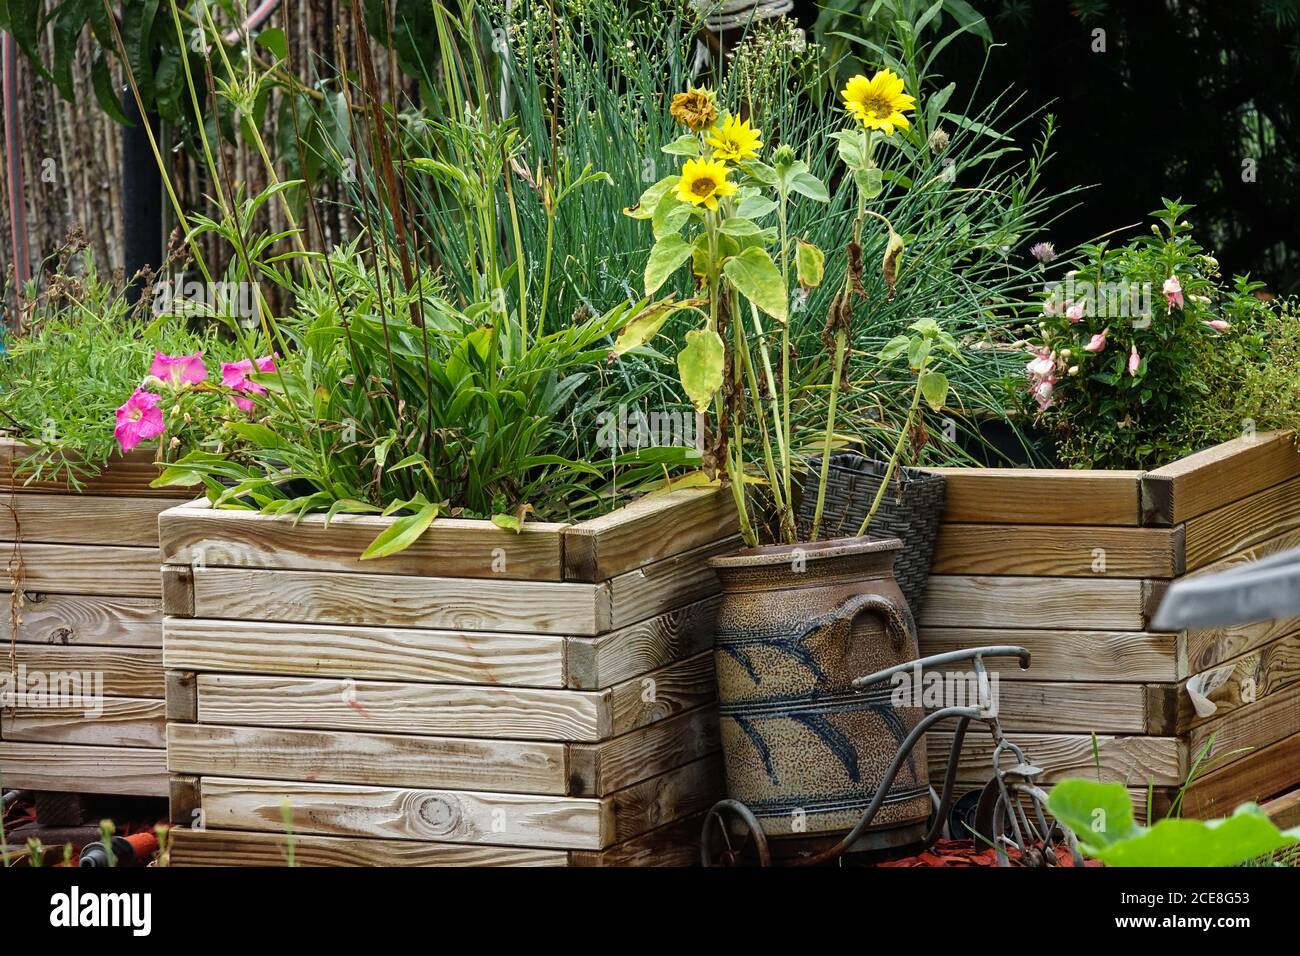 Hochbeet aus Holz mit Pflanzen im Garten Hochbeet Garten Sonnenblumen in einem Topf Stockfoto